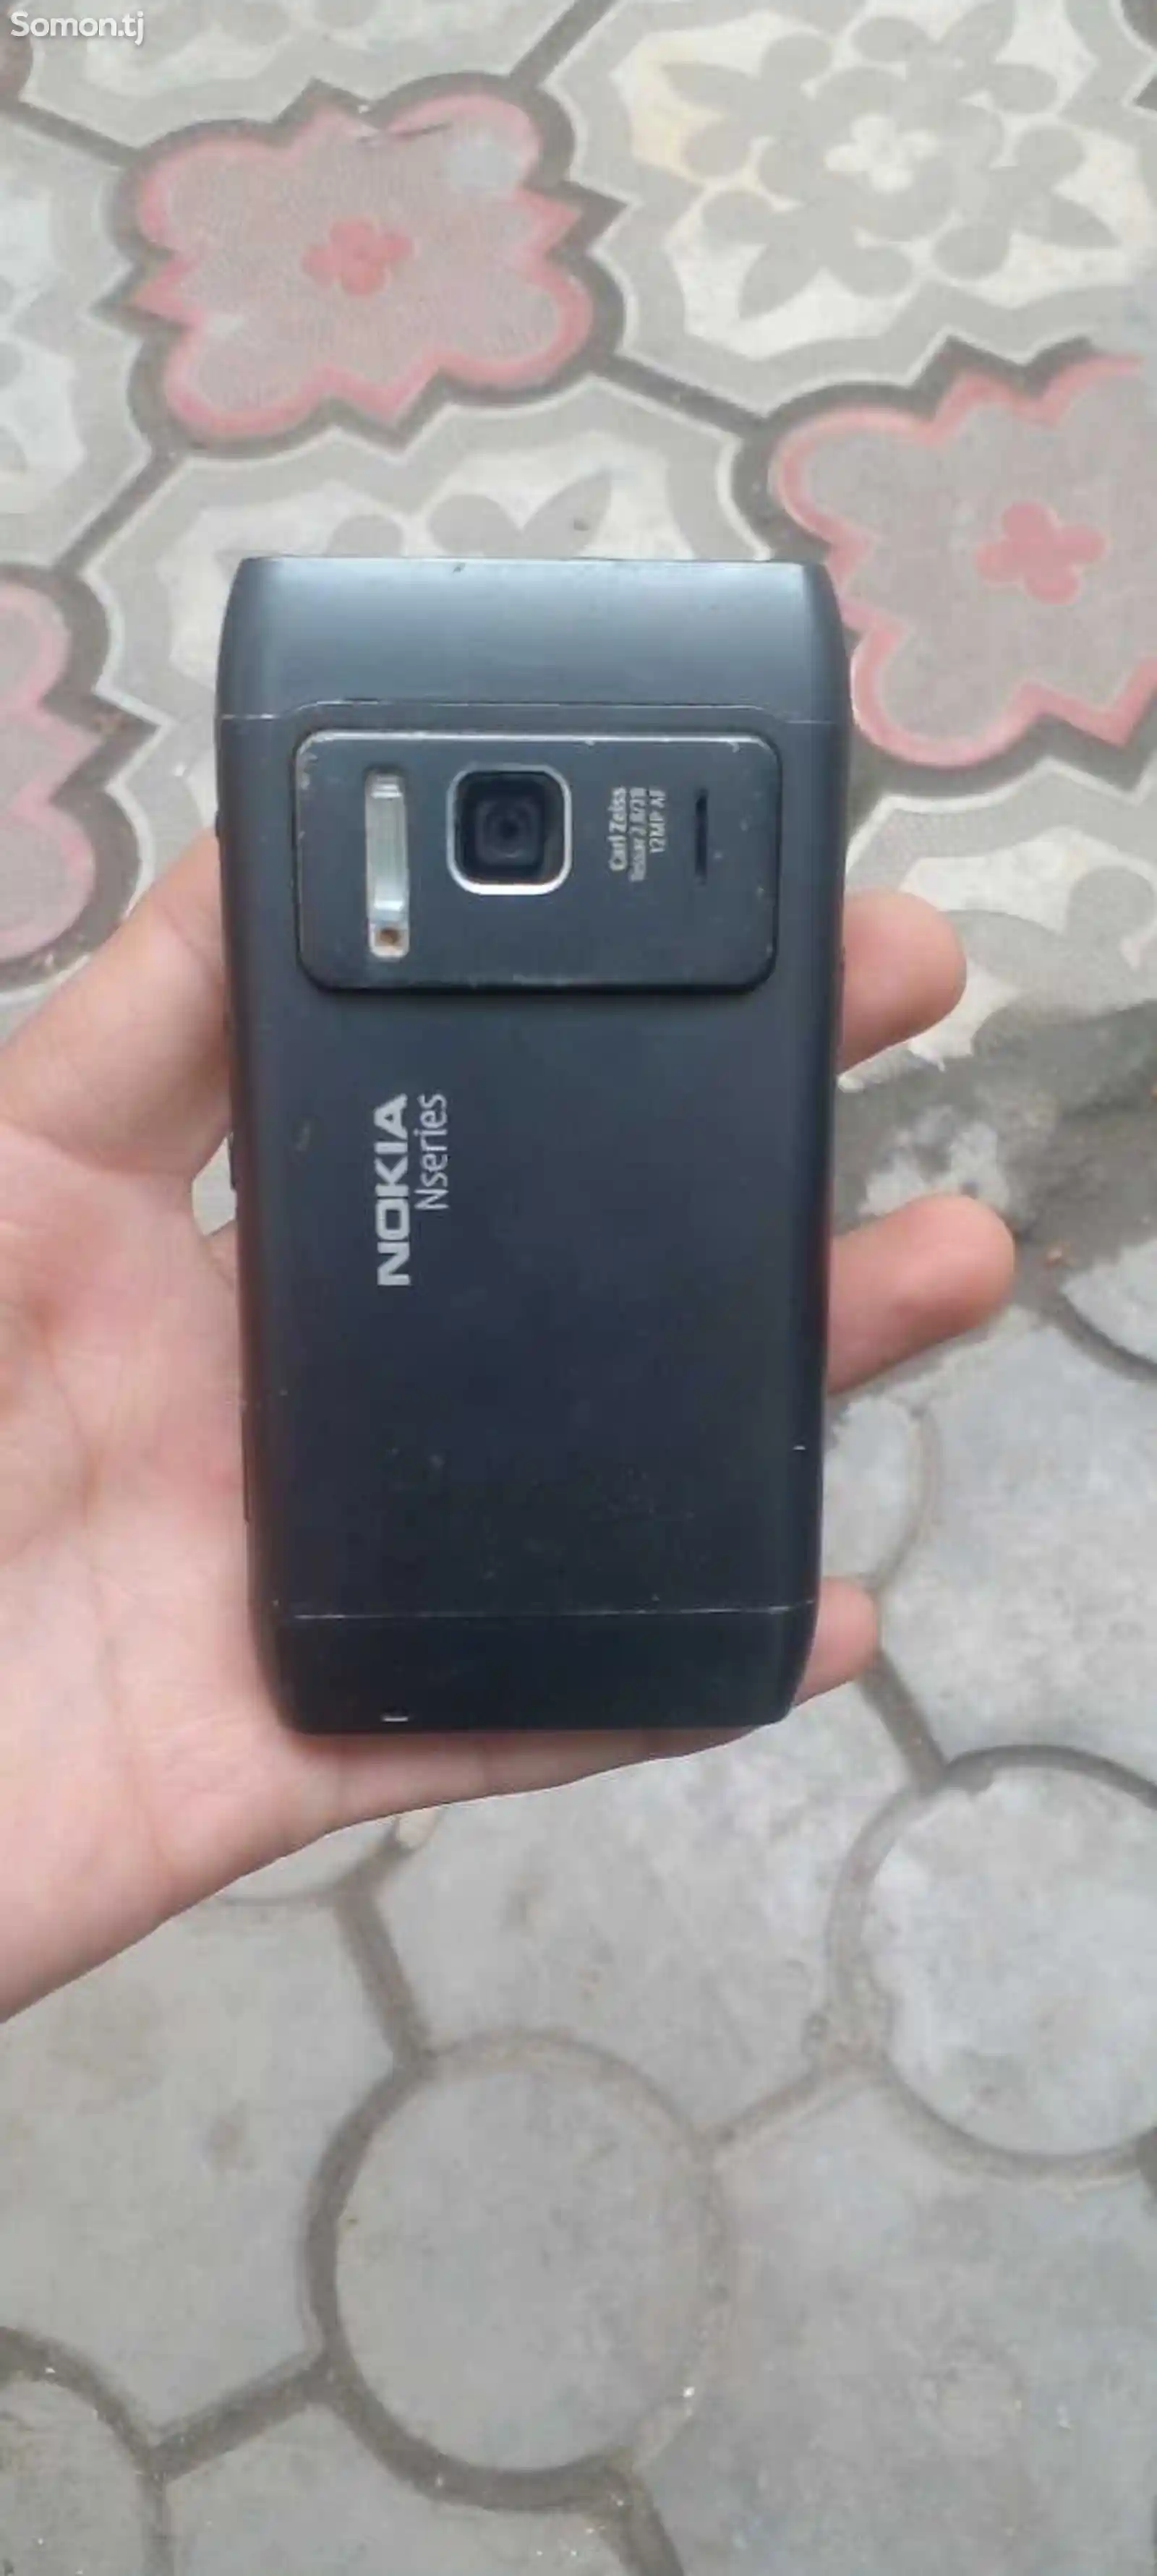 Nokia N8-2